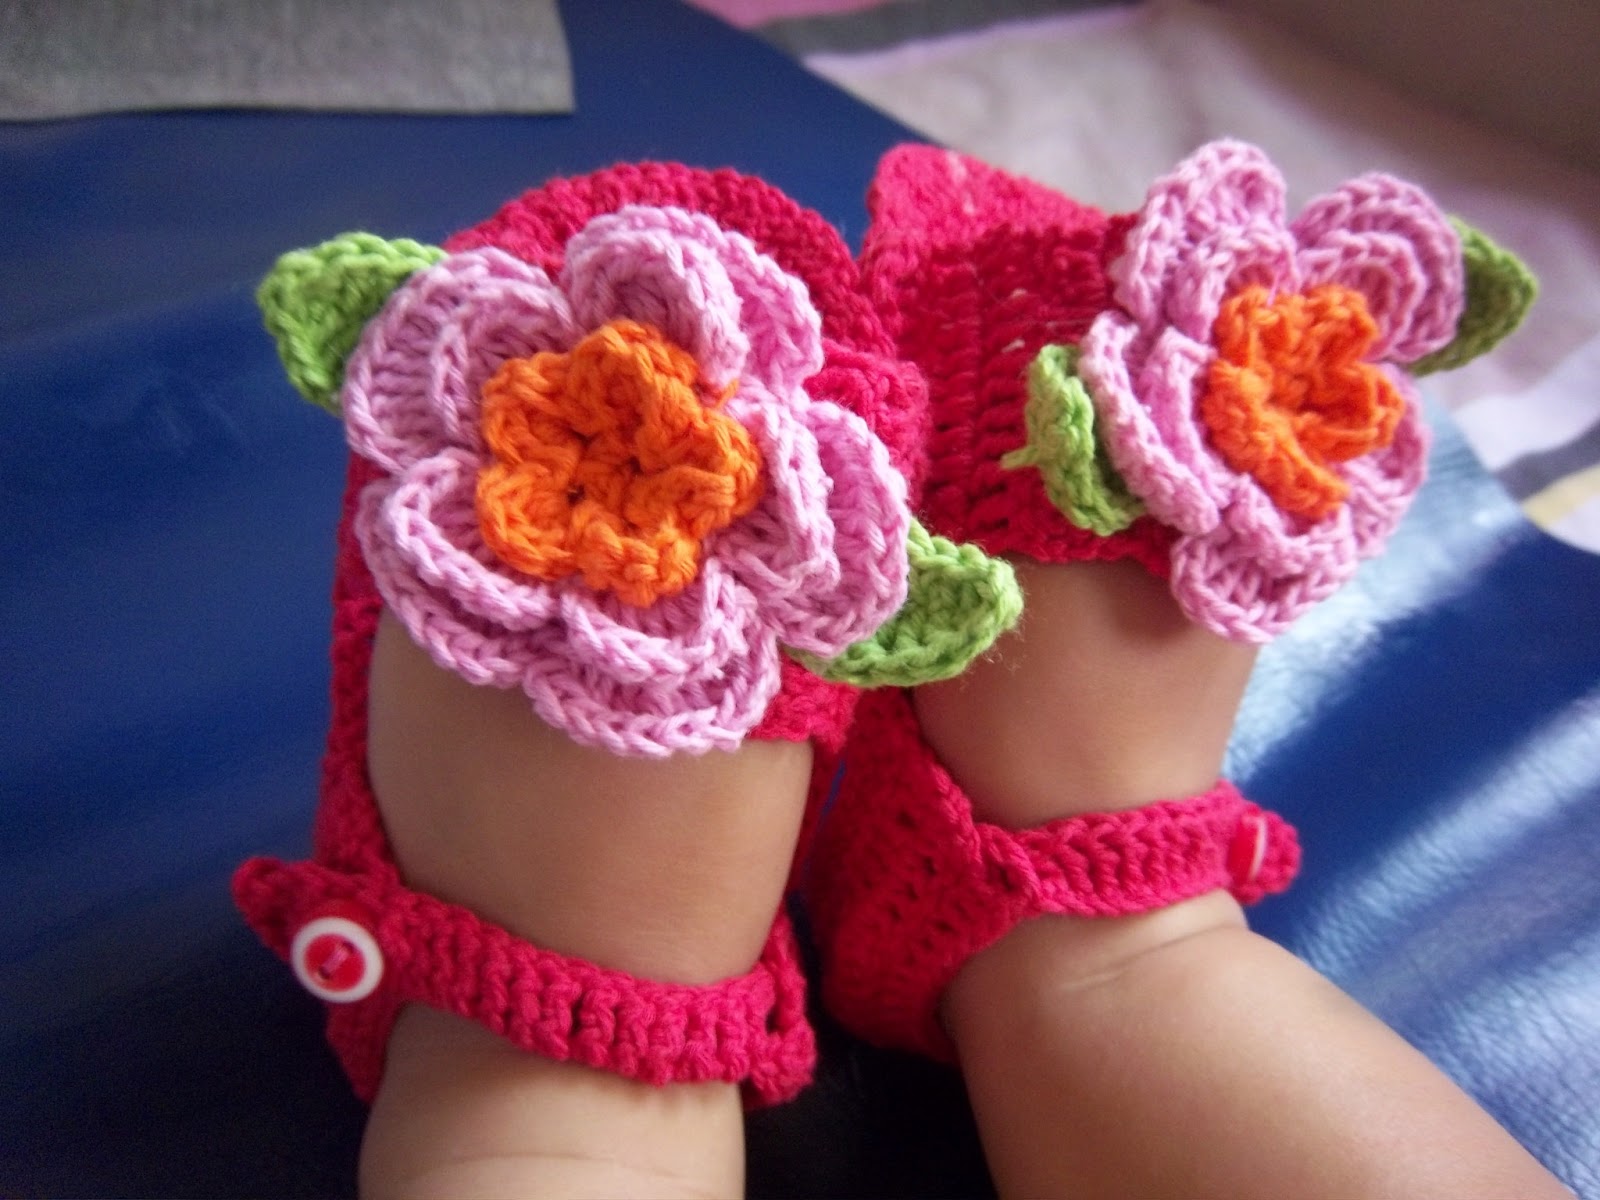 RUMAH RAJUT WISANGGENI-SOLO: Sepatu Rajut Baby-baby booties